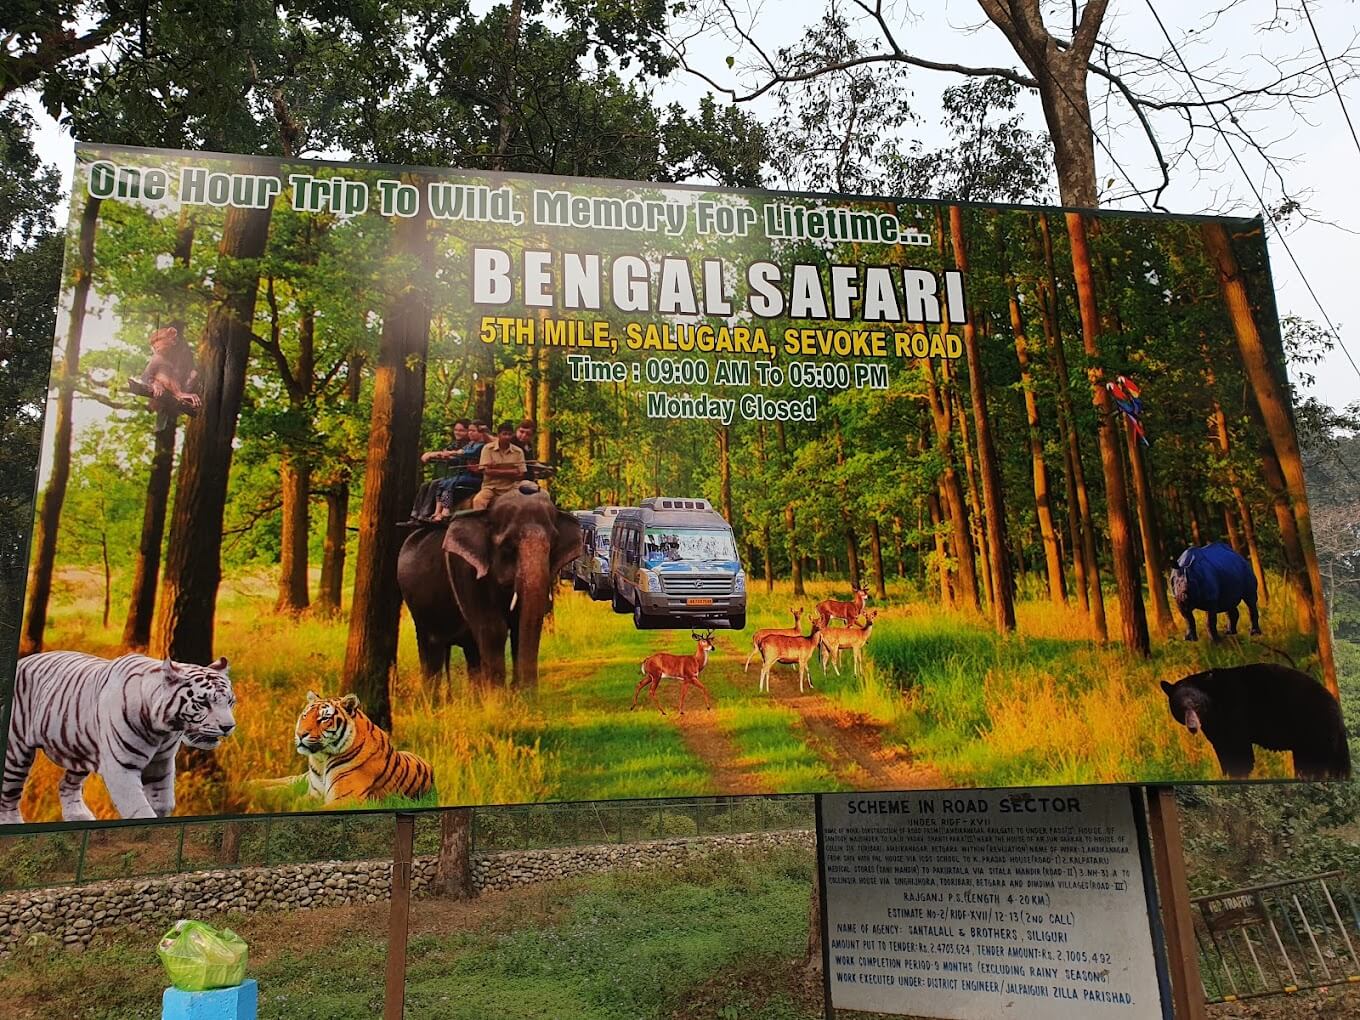 Bengal Safari Siliguri Entry fee, safari rates, photos and more